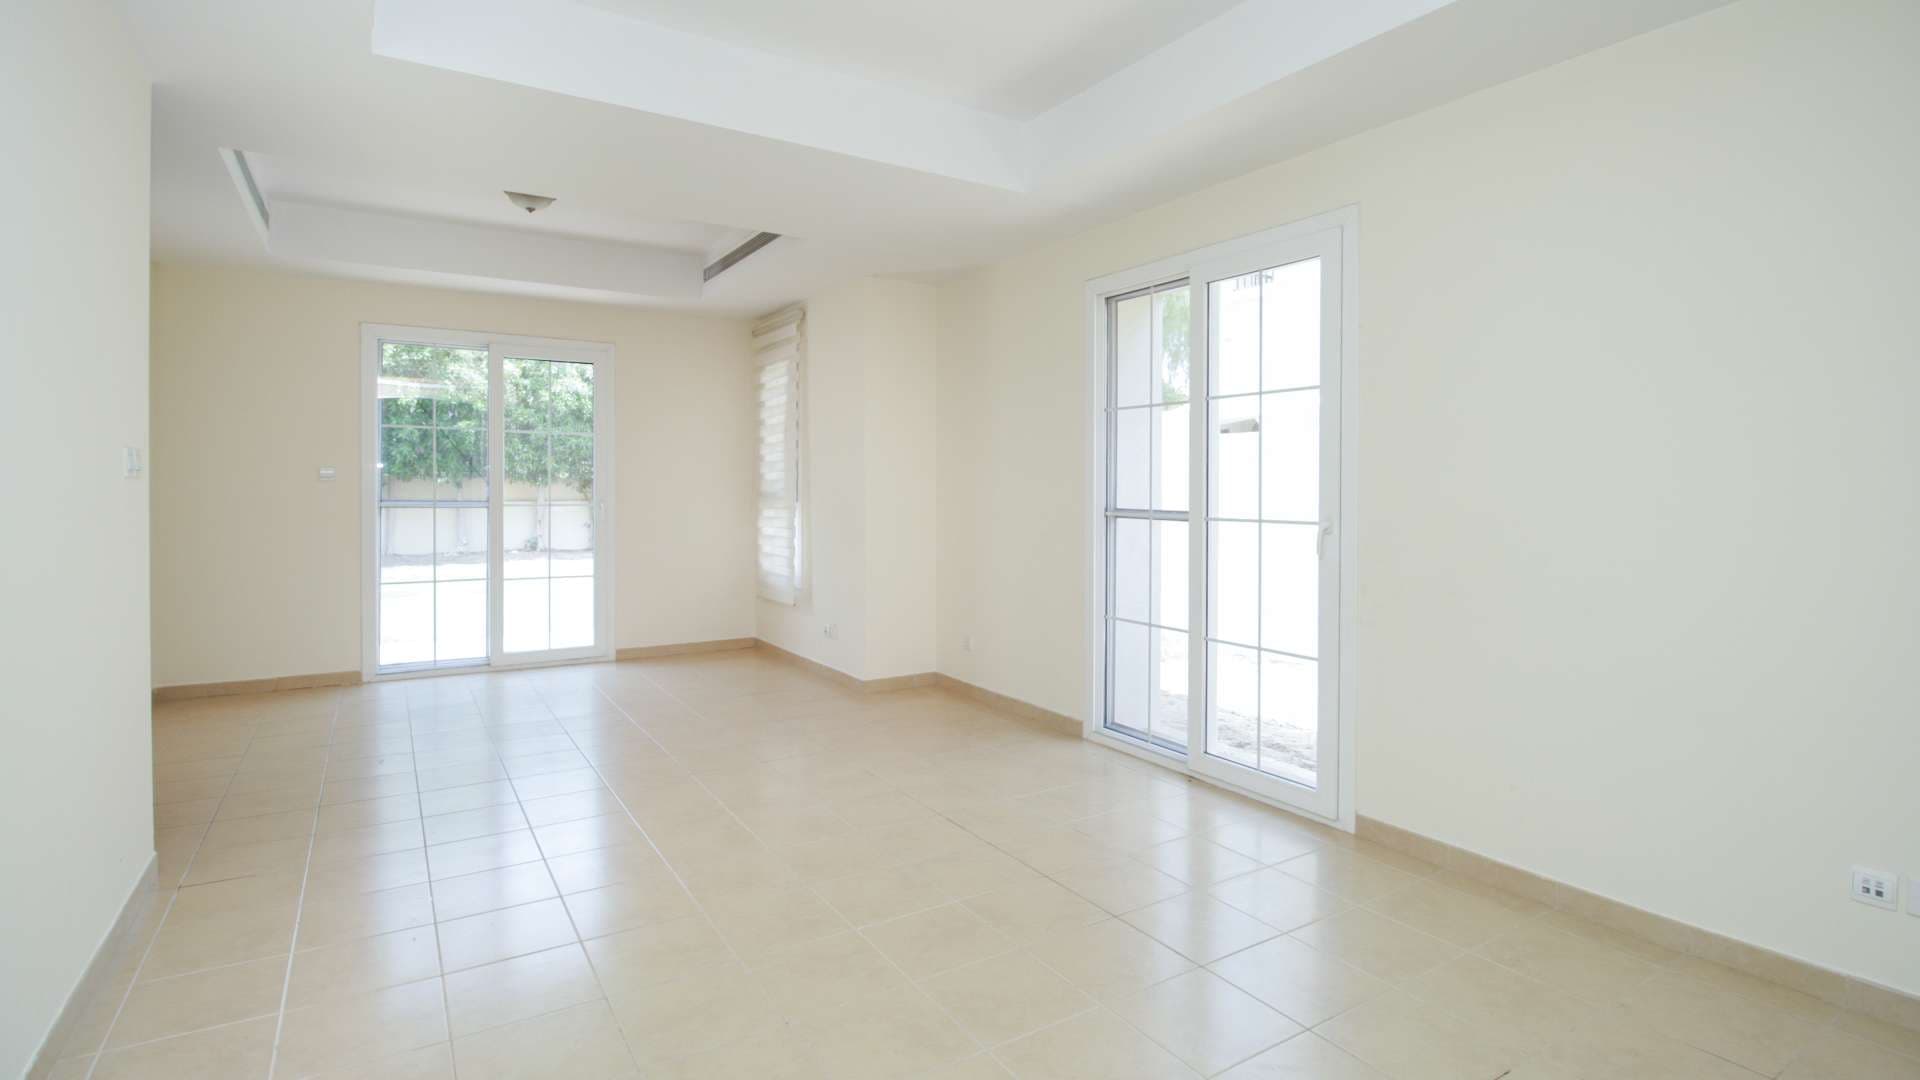  Bedroom Villa For Rent Al Reem Lp06837 A7bc16532588c80.jpg